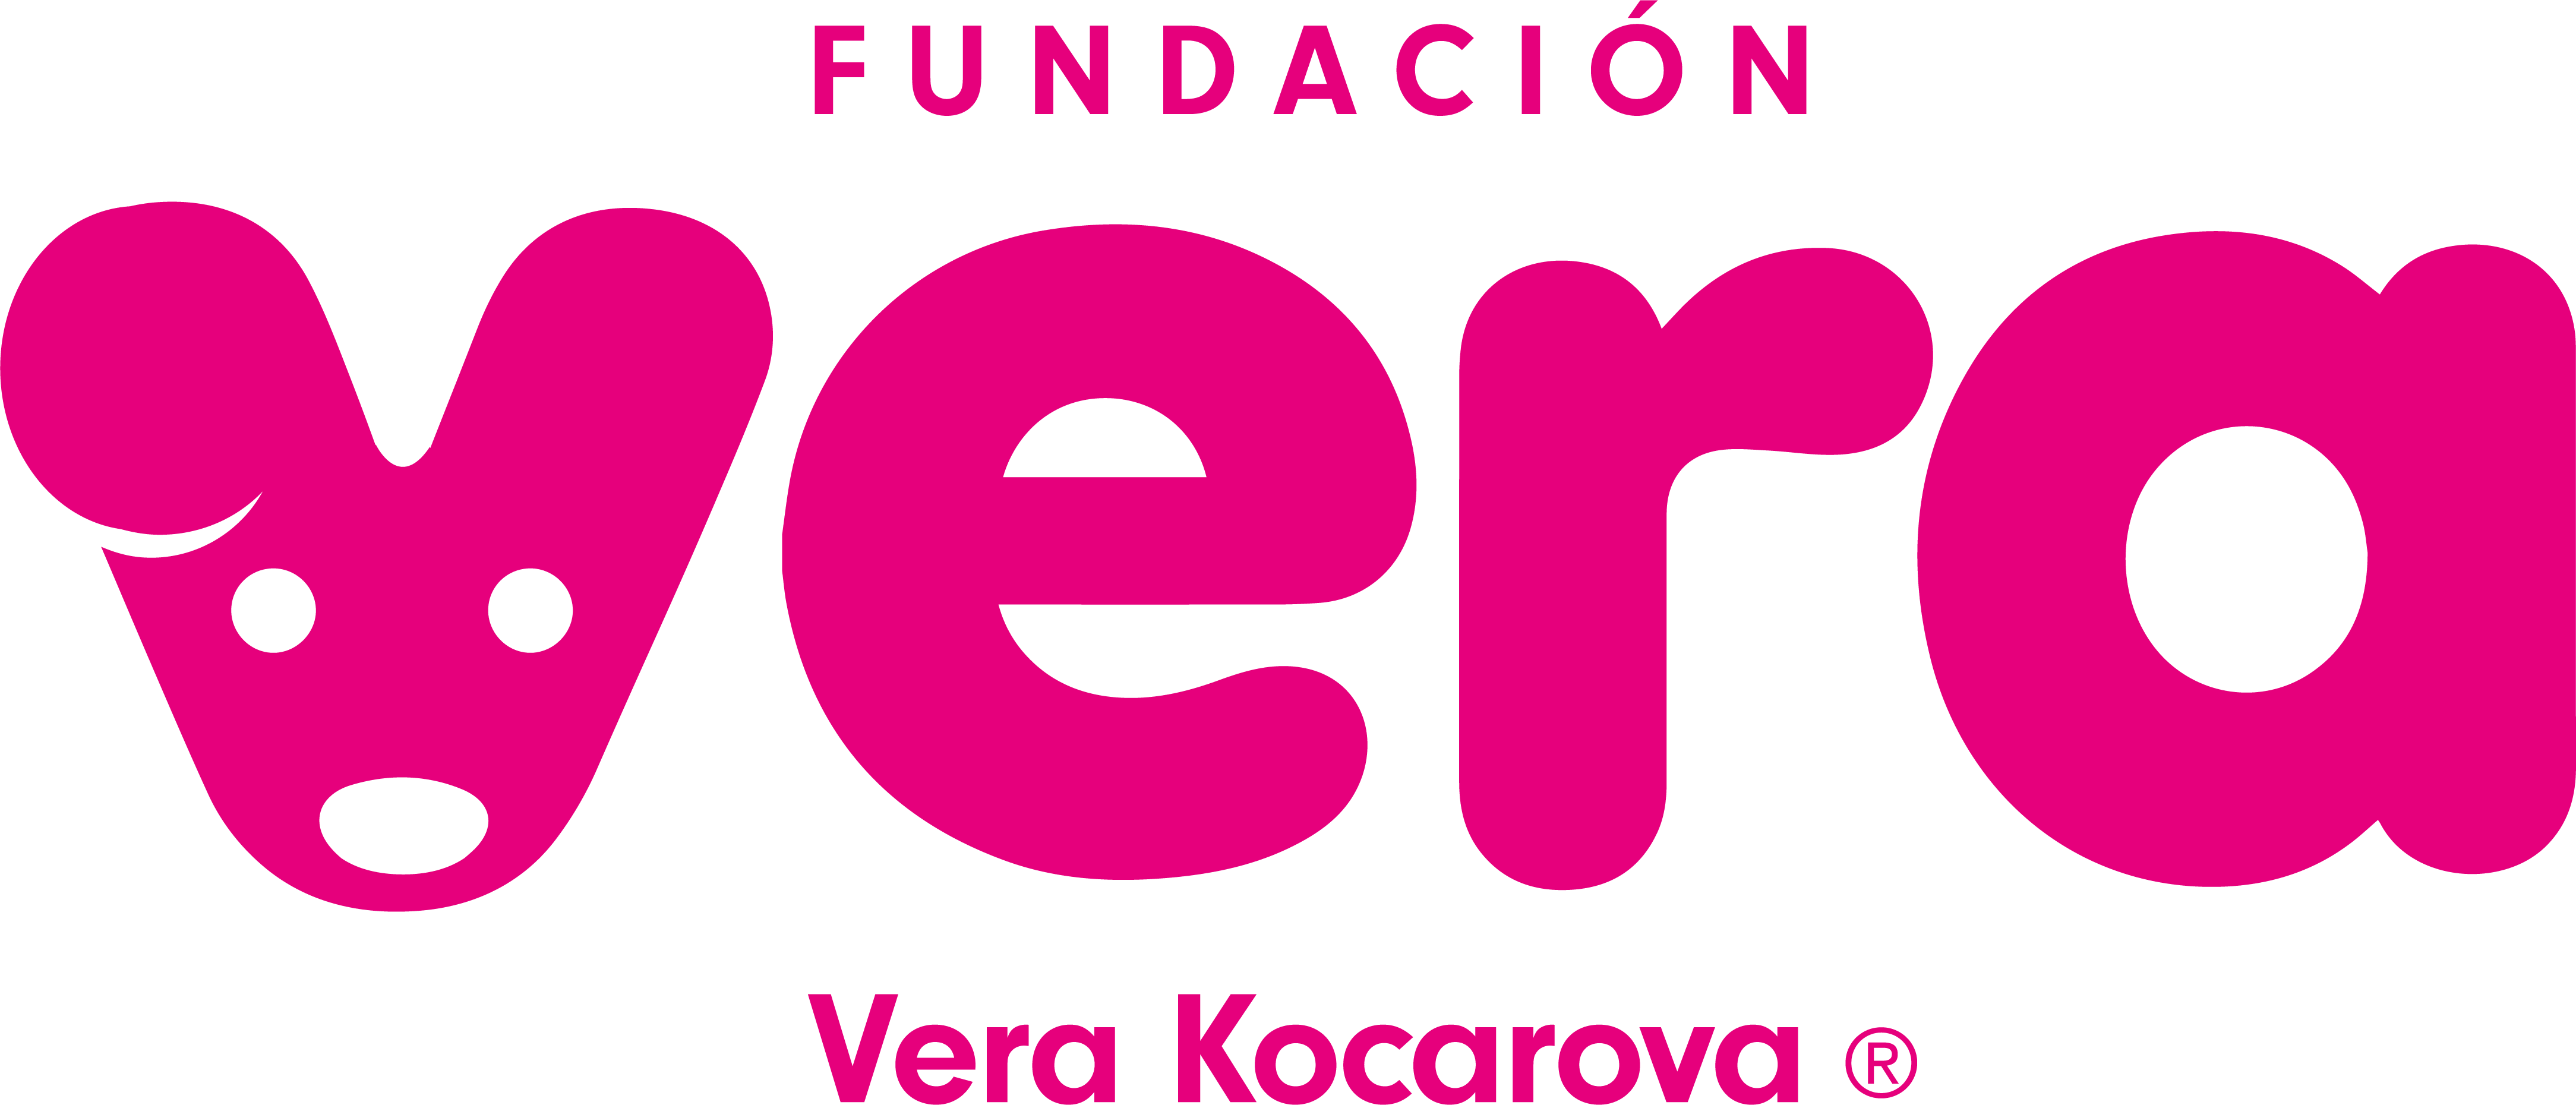 Fundación Vera